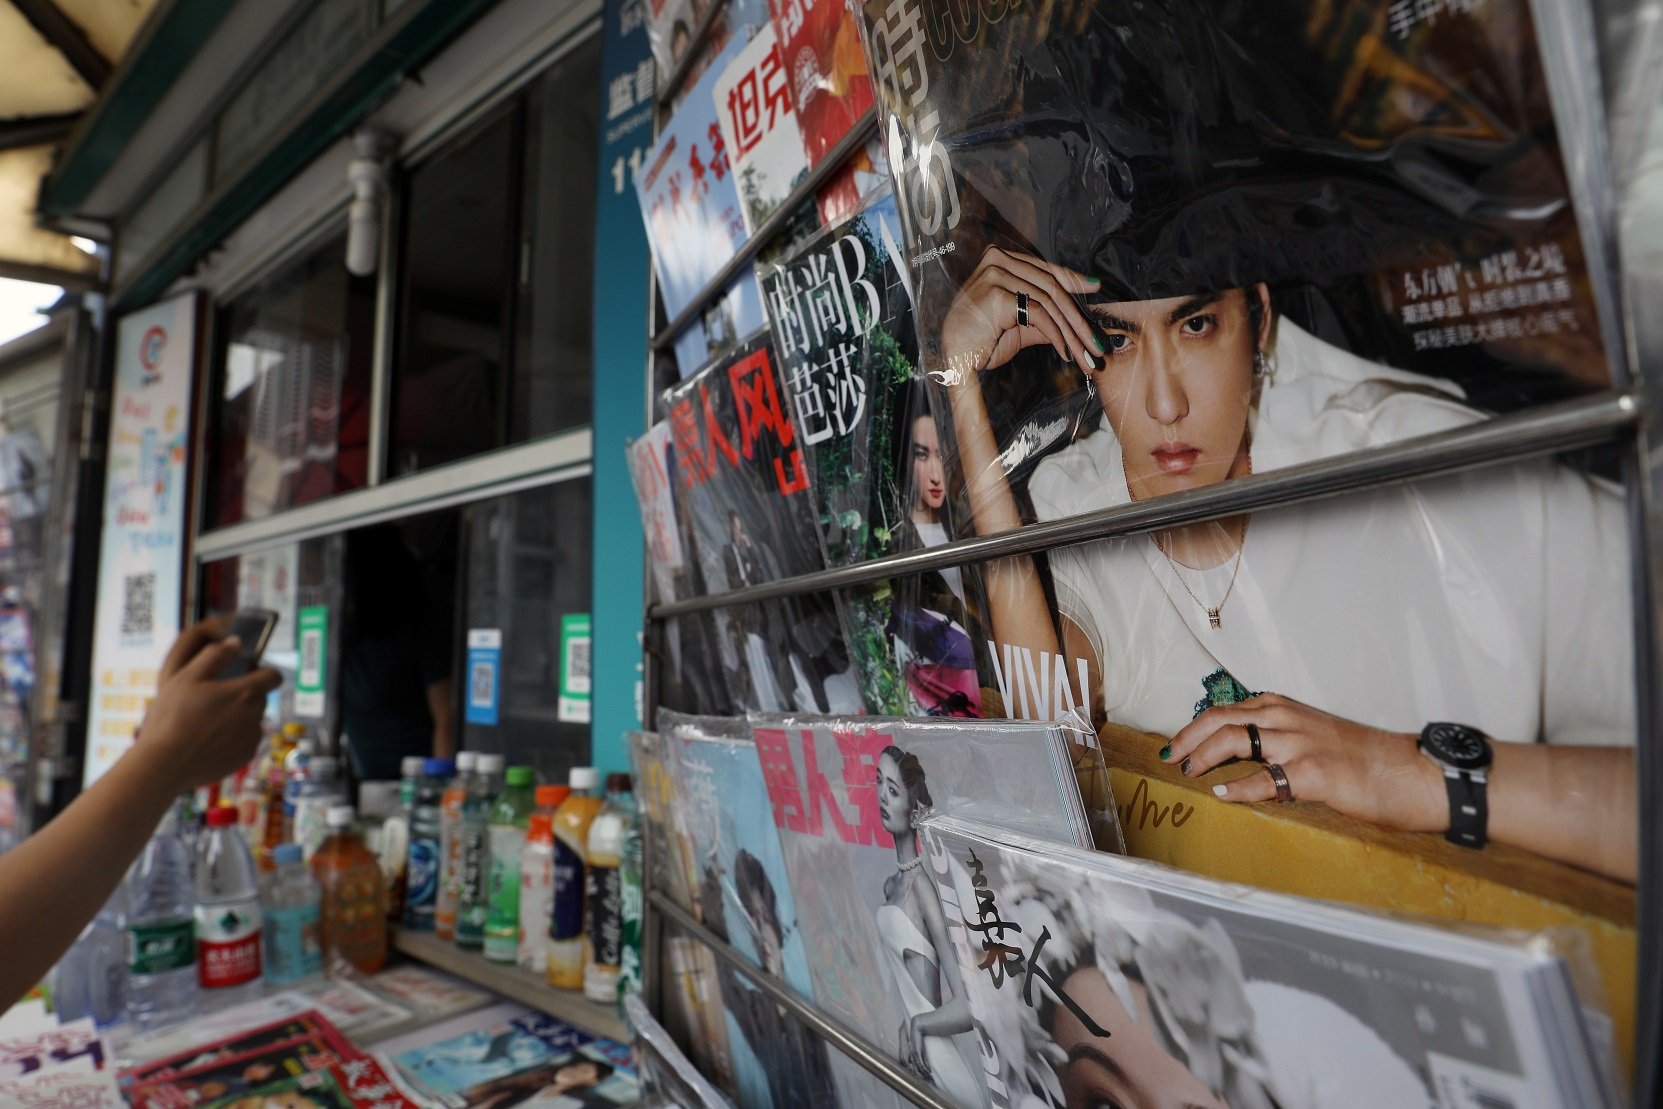 一家報刊店擺放著封面印有吳亦凡的時尚類雜誌。